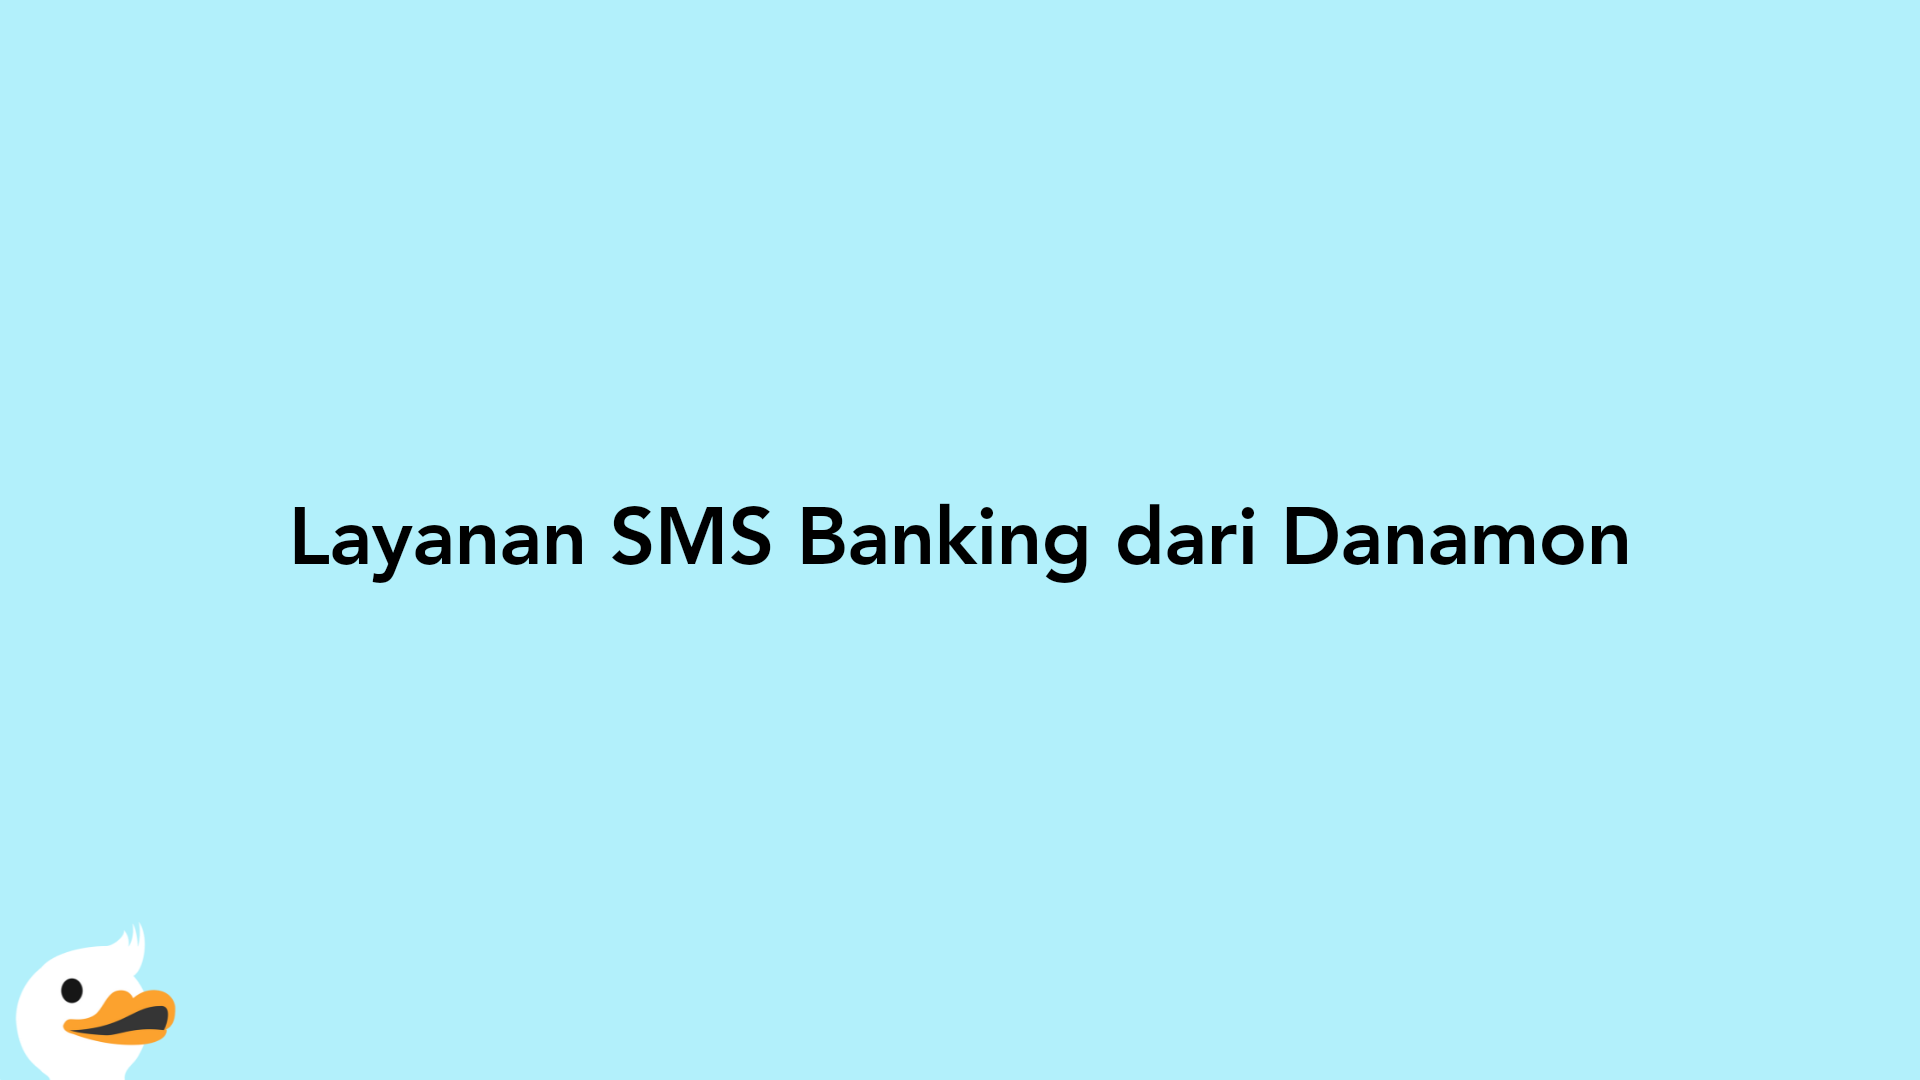 Layanan SMS Banking dari Danamon